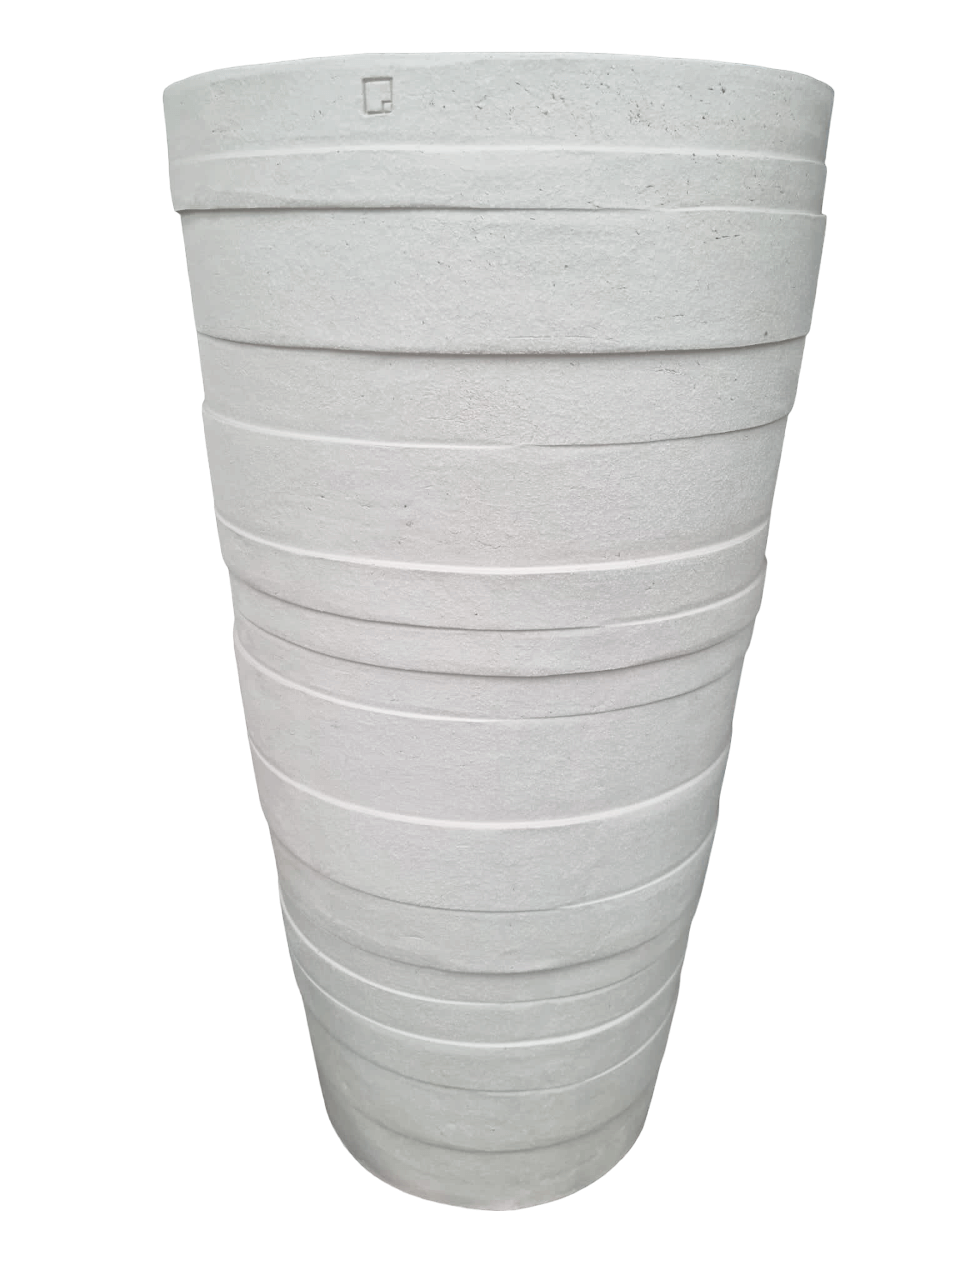 Frostfestes Gefäß von Atelier Vierkant Model MF140 in nordic  white